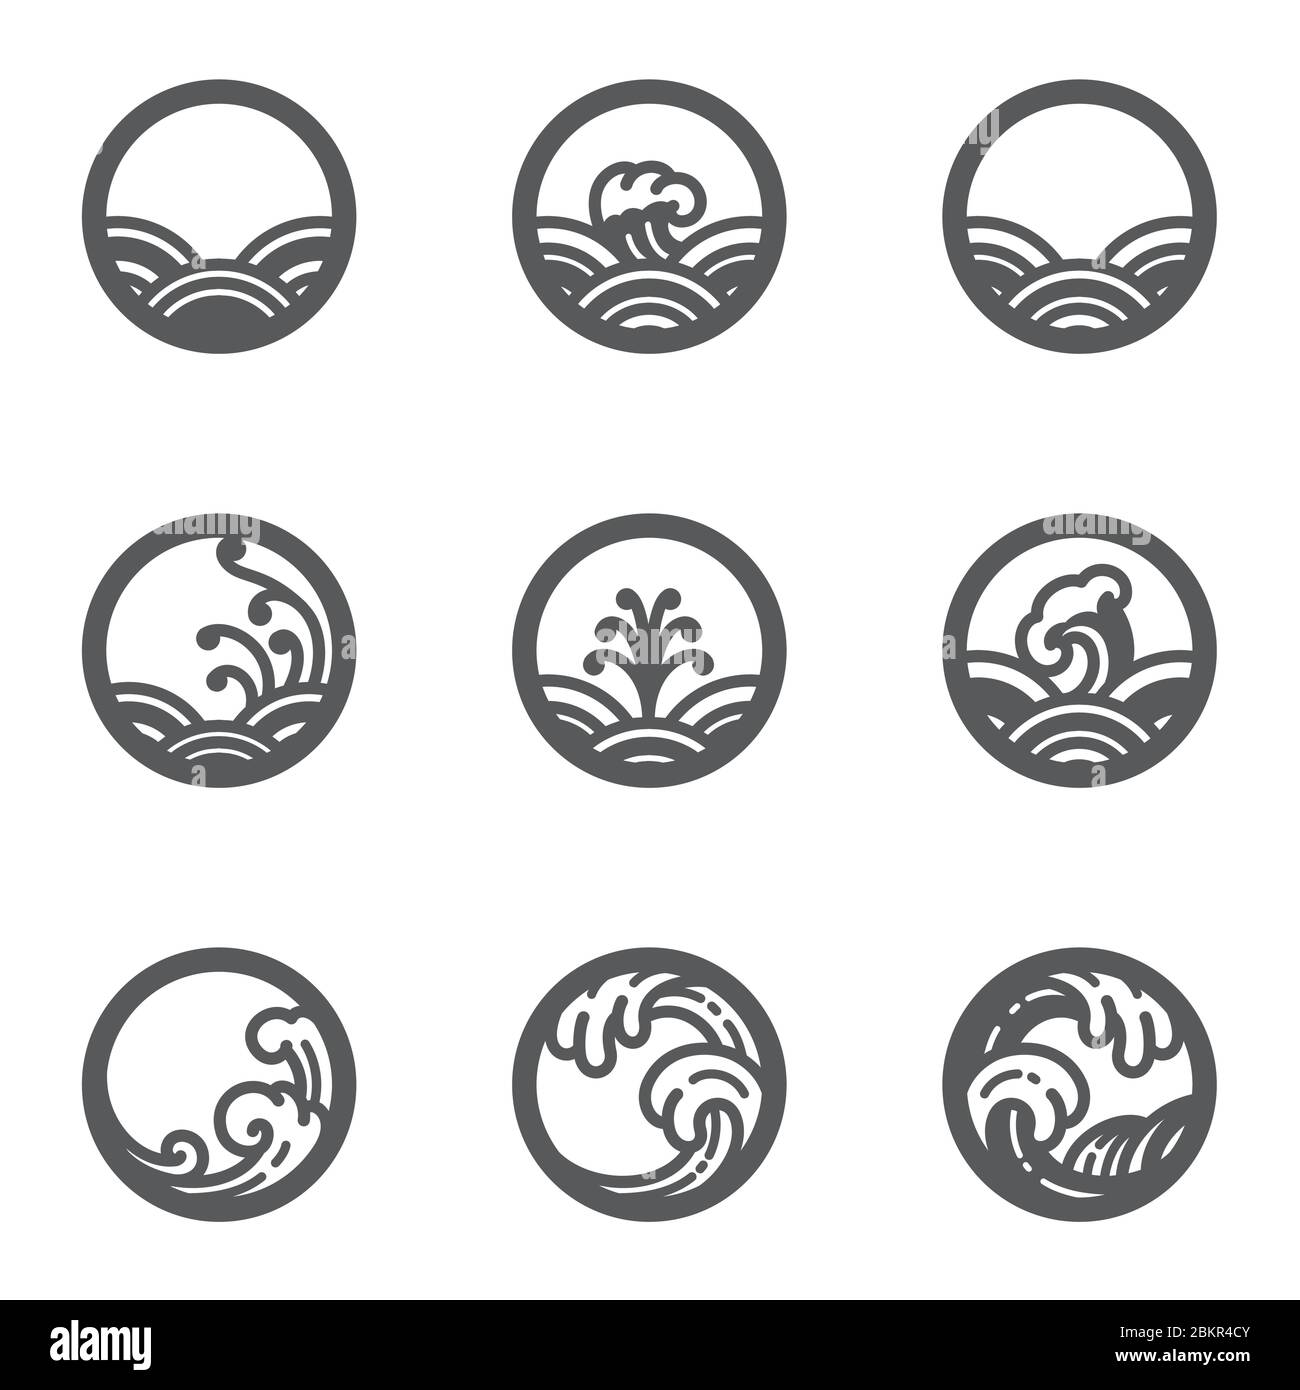 Symbol für Wasserwelle gesetzt. Design in runder Form und gut für den Einsatz als Orient Meer Meer Symbole oder Beschilderung oder traditionelle Logo. Für das Produkt aus Wasser oder Stock Vektor